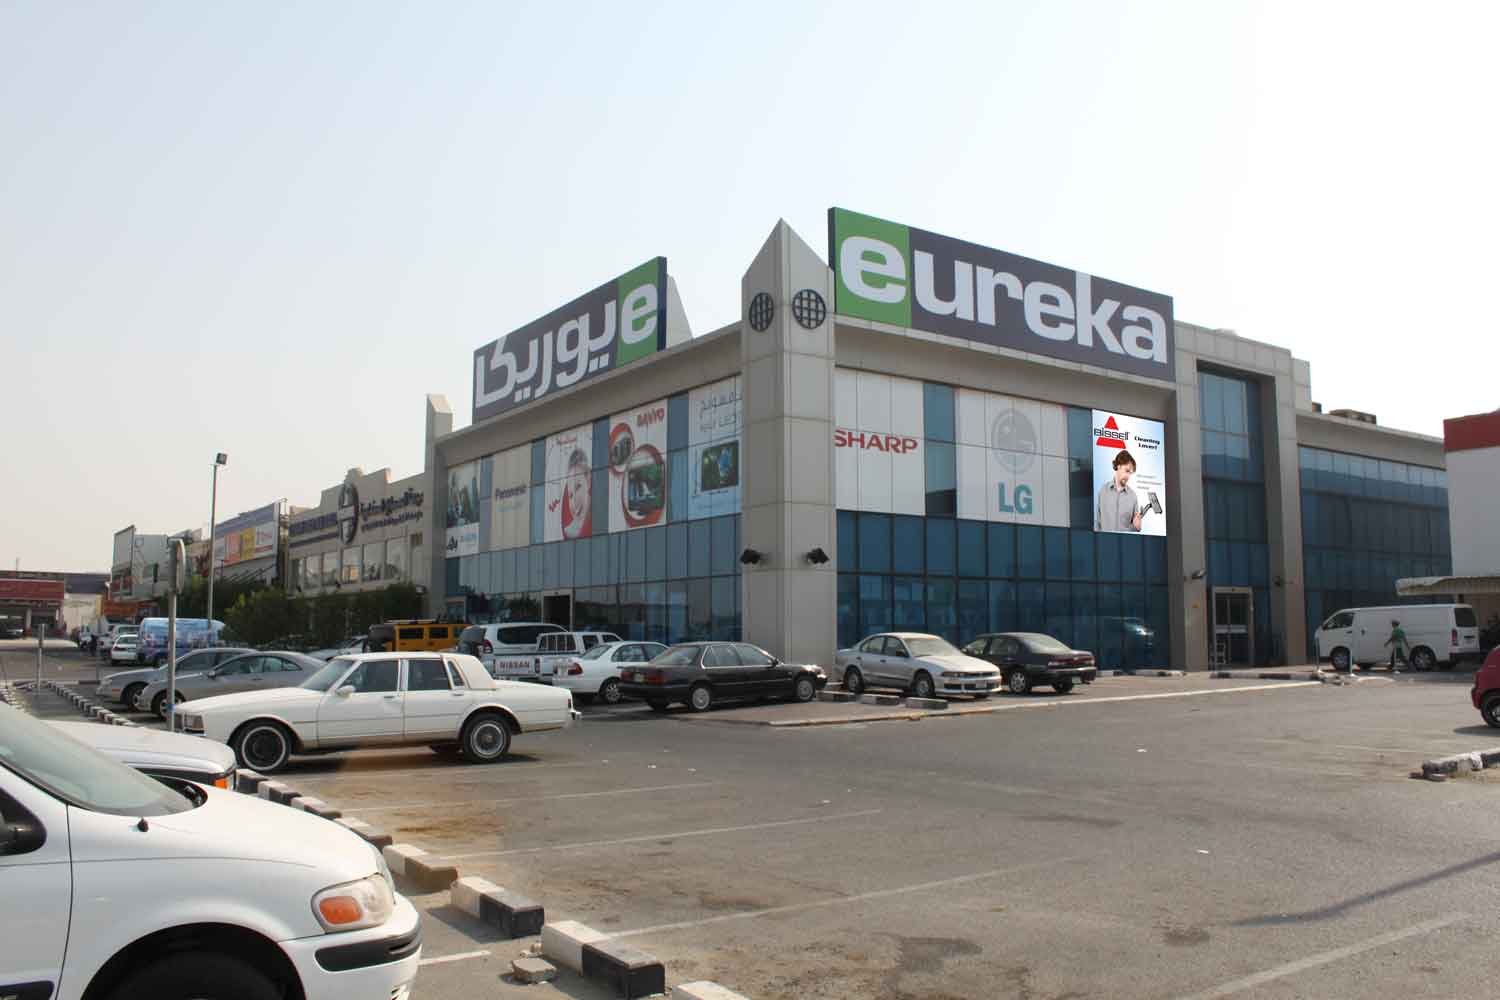 كيف ادفع اقساط يوريكا للهواتف eureka mobile